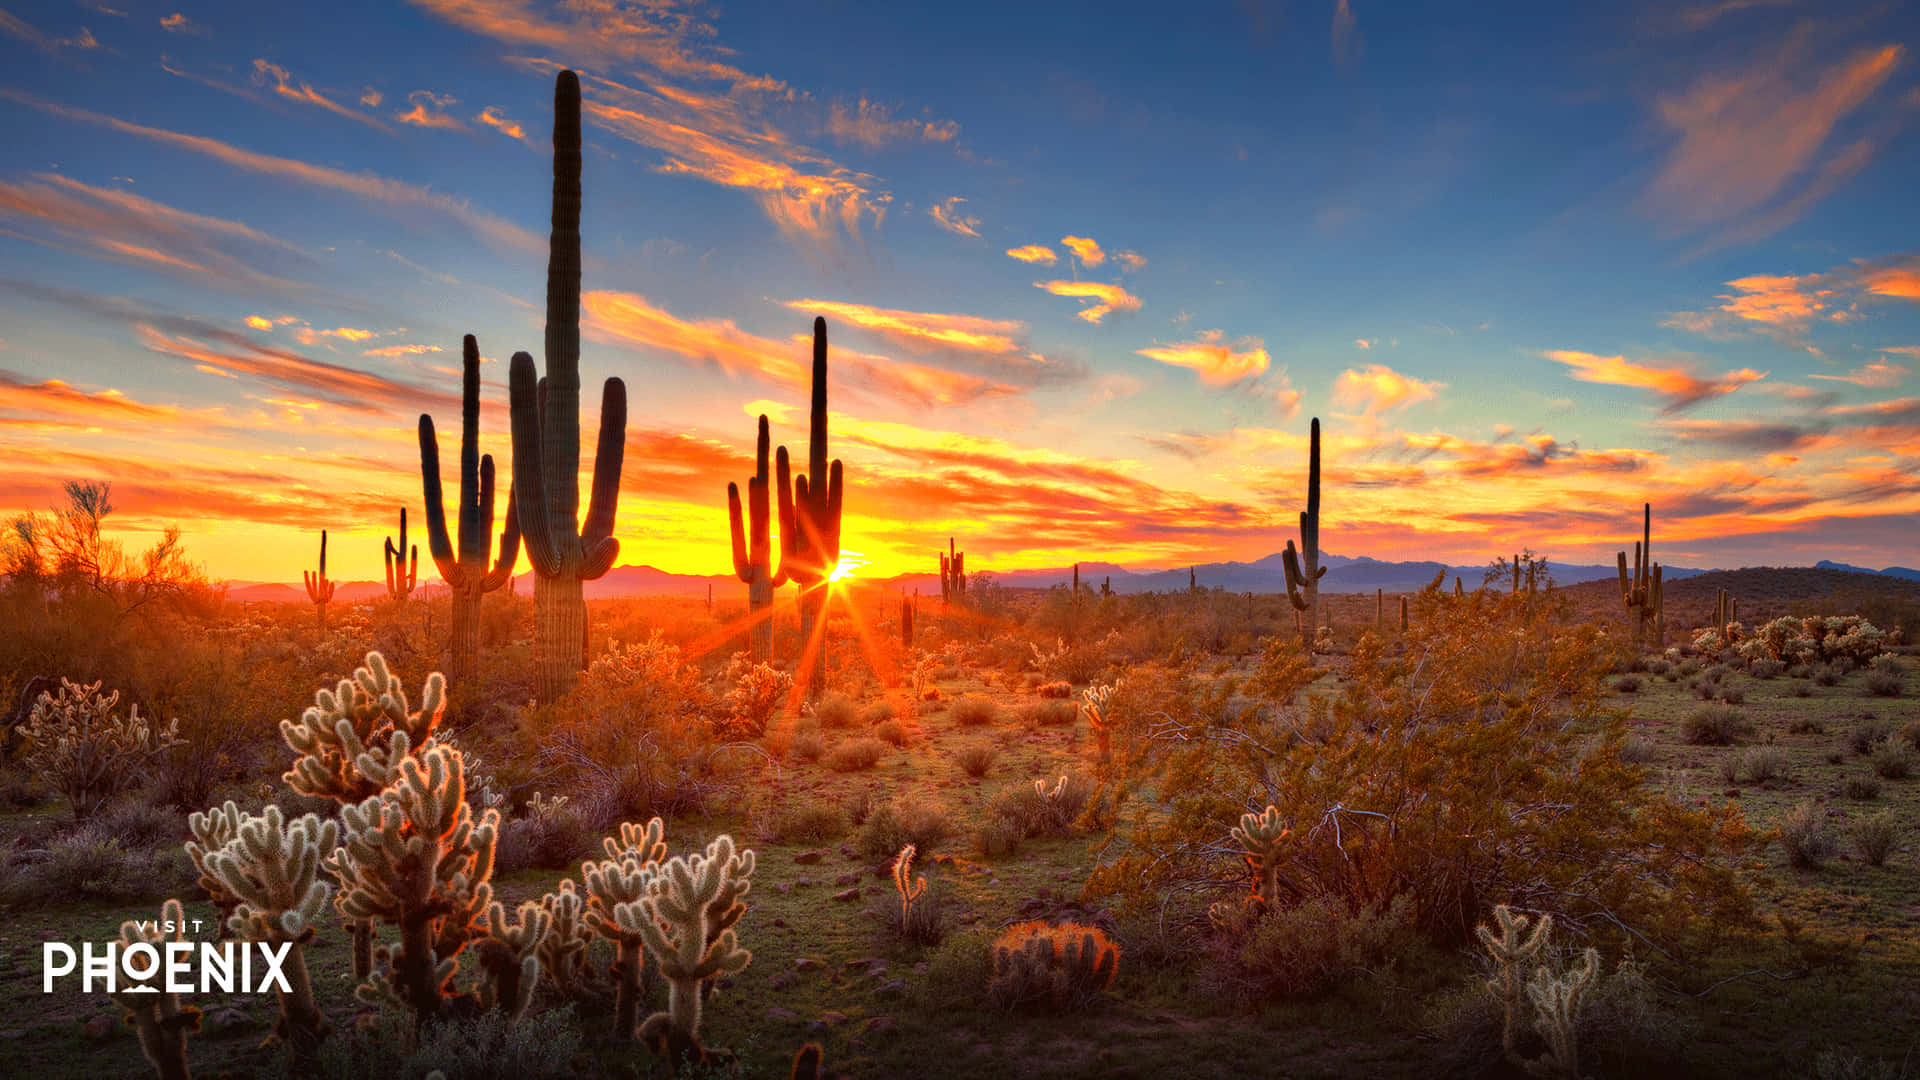 Explore the Beauty of Arizona